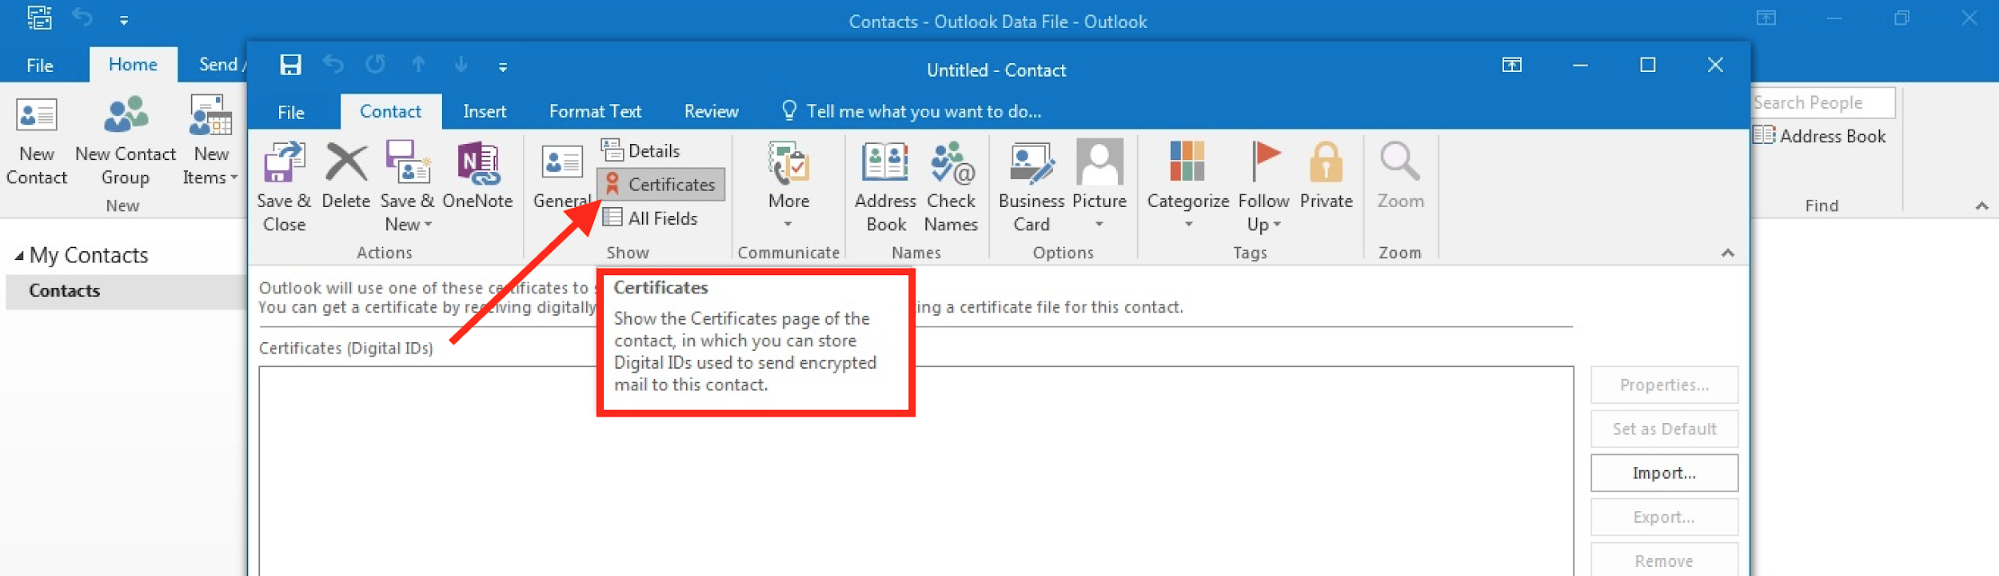 Outlookの新しいメール証明書オプション